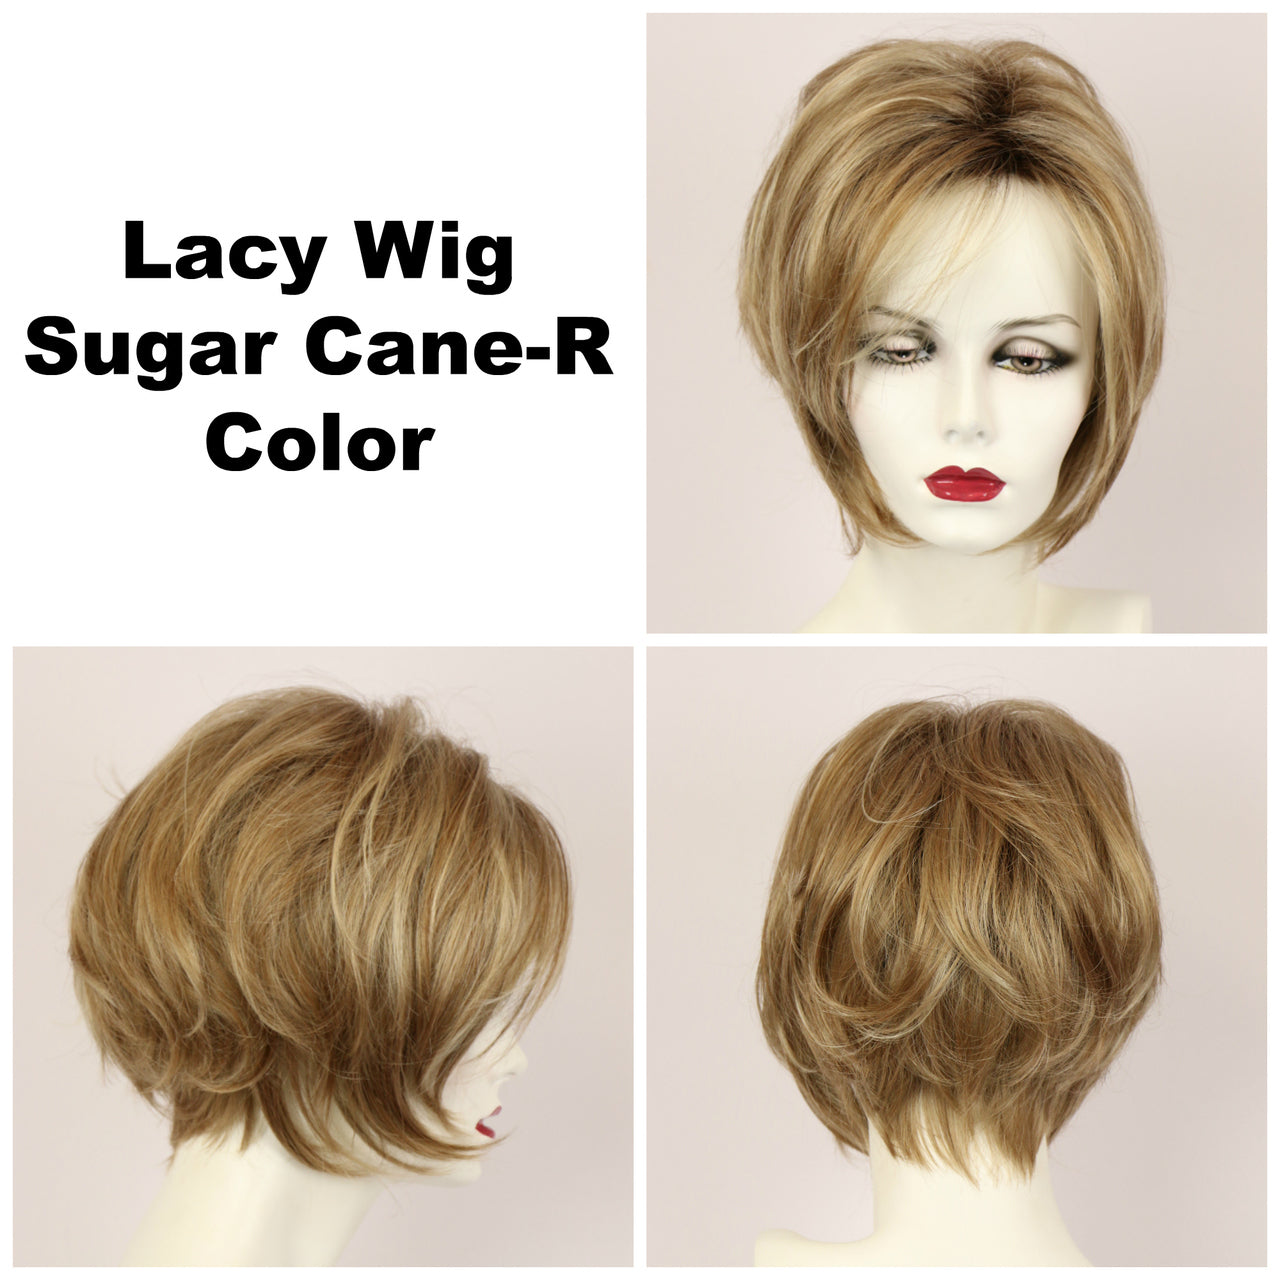 Sugar Cane-R / Lacy w/ Roots / Medium Wig